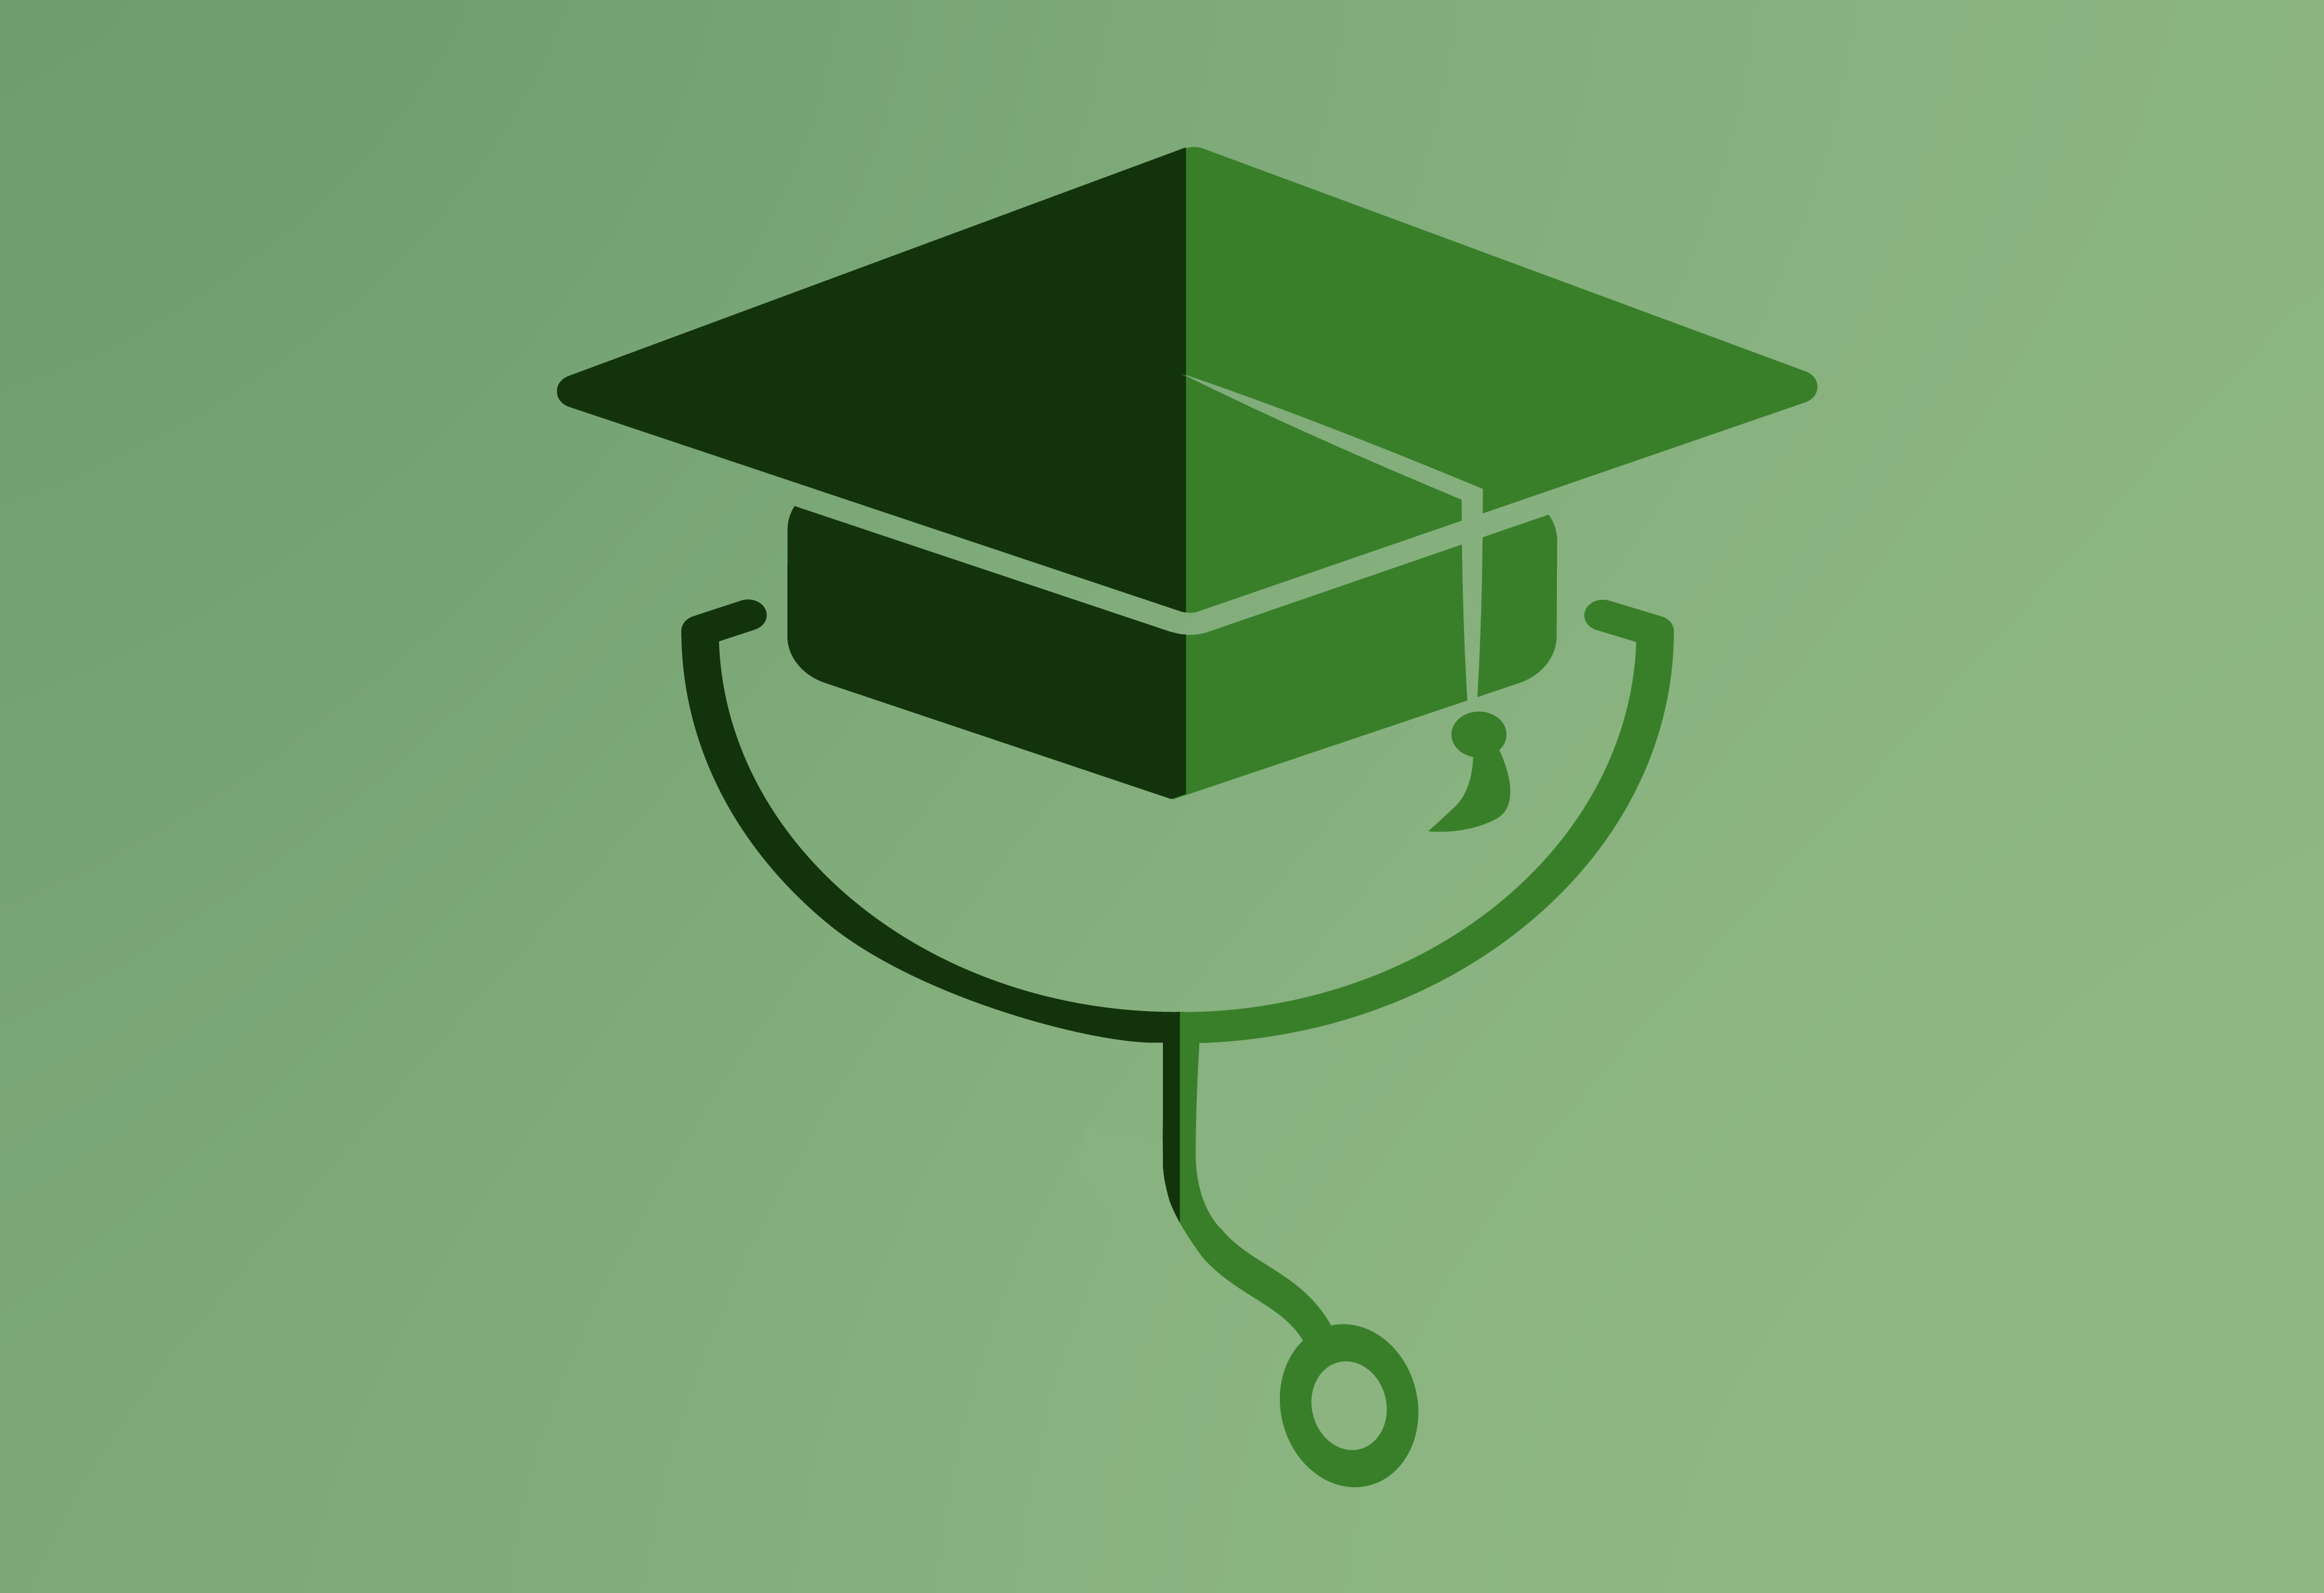 medical school graduation cap